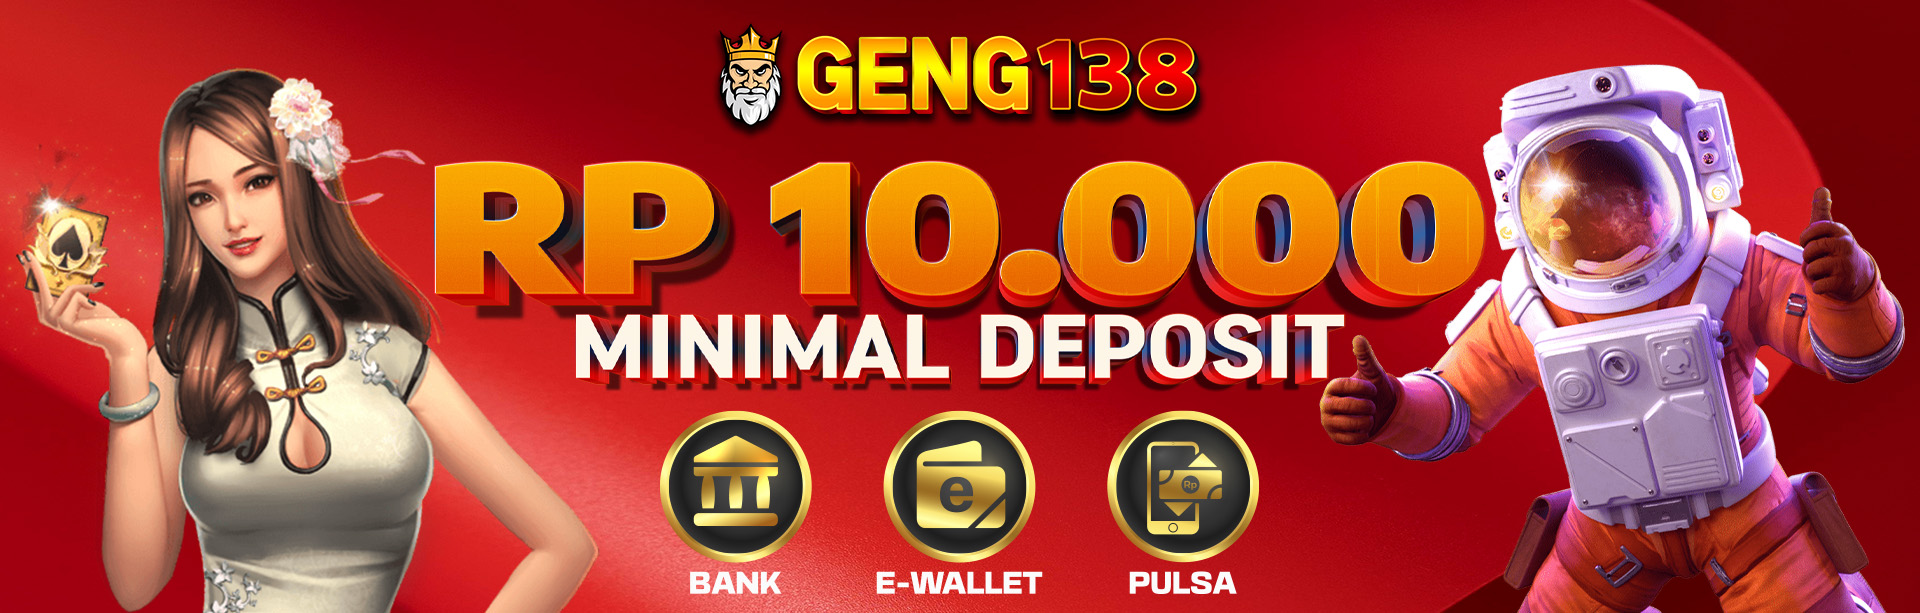 geng138 deposit 10 rb